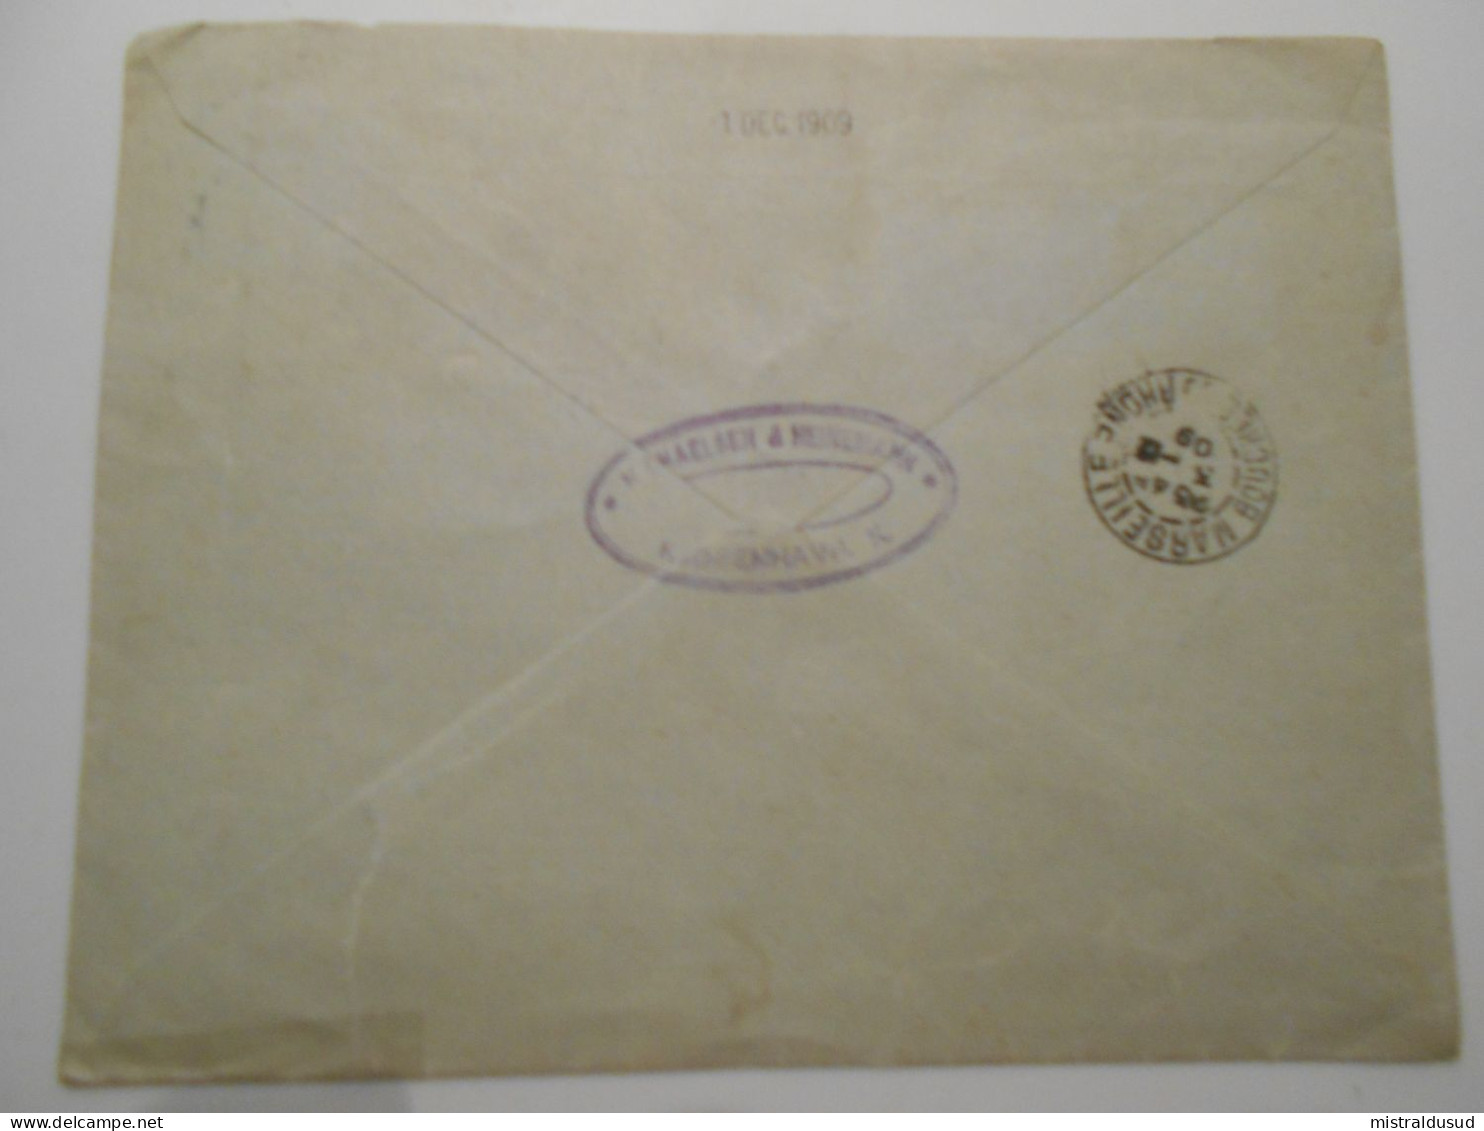 Danemark , Lettre Recommandee De Kjobenhavn 1909 Pour Marseille - Lettres & Documents